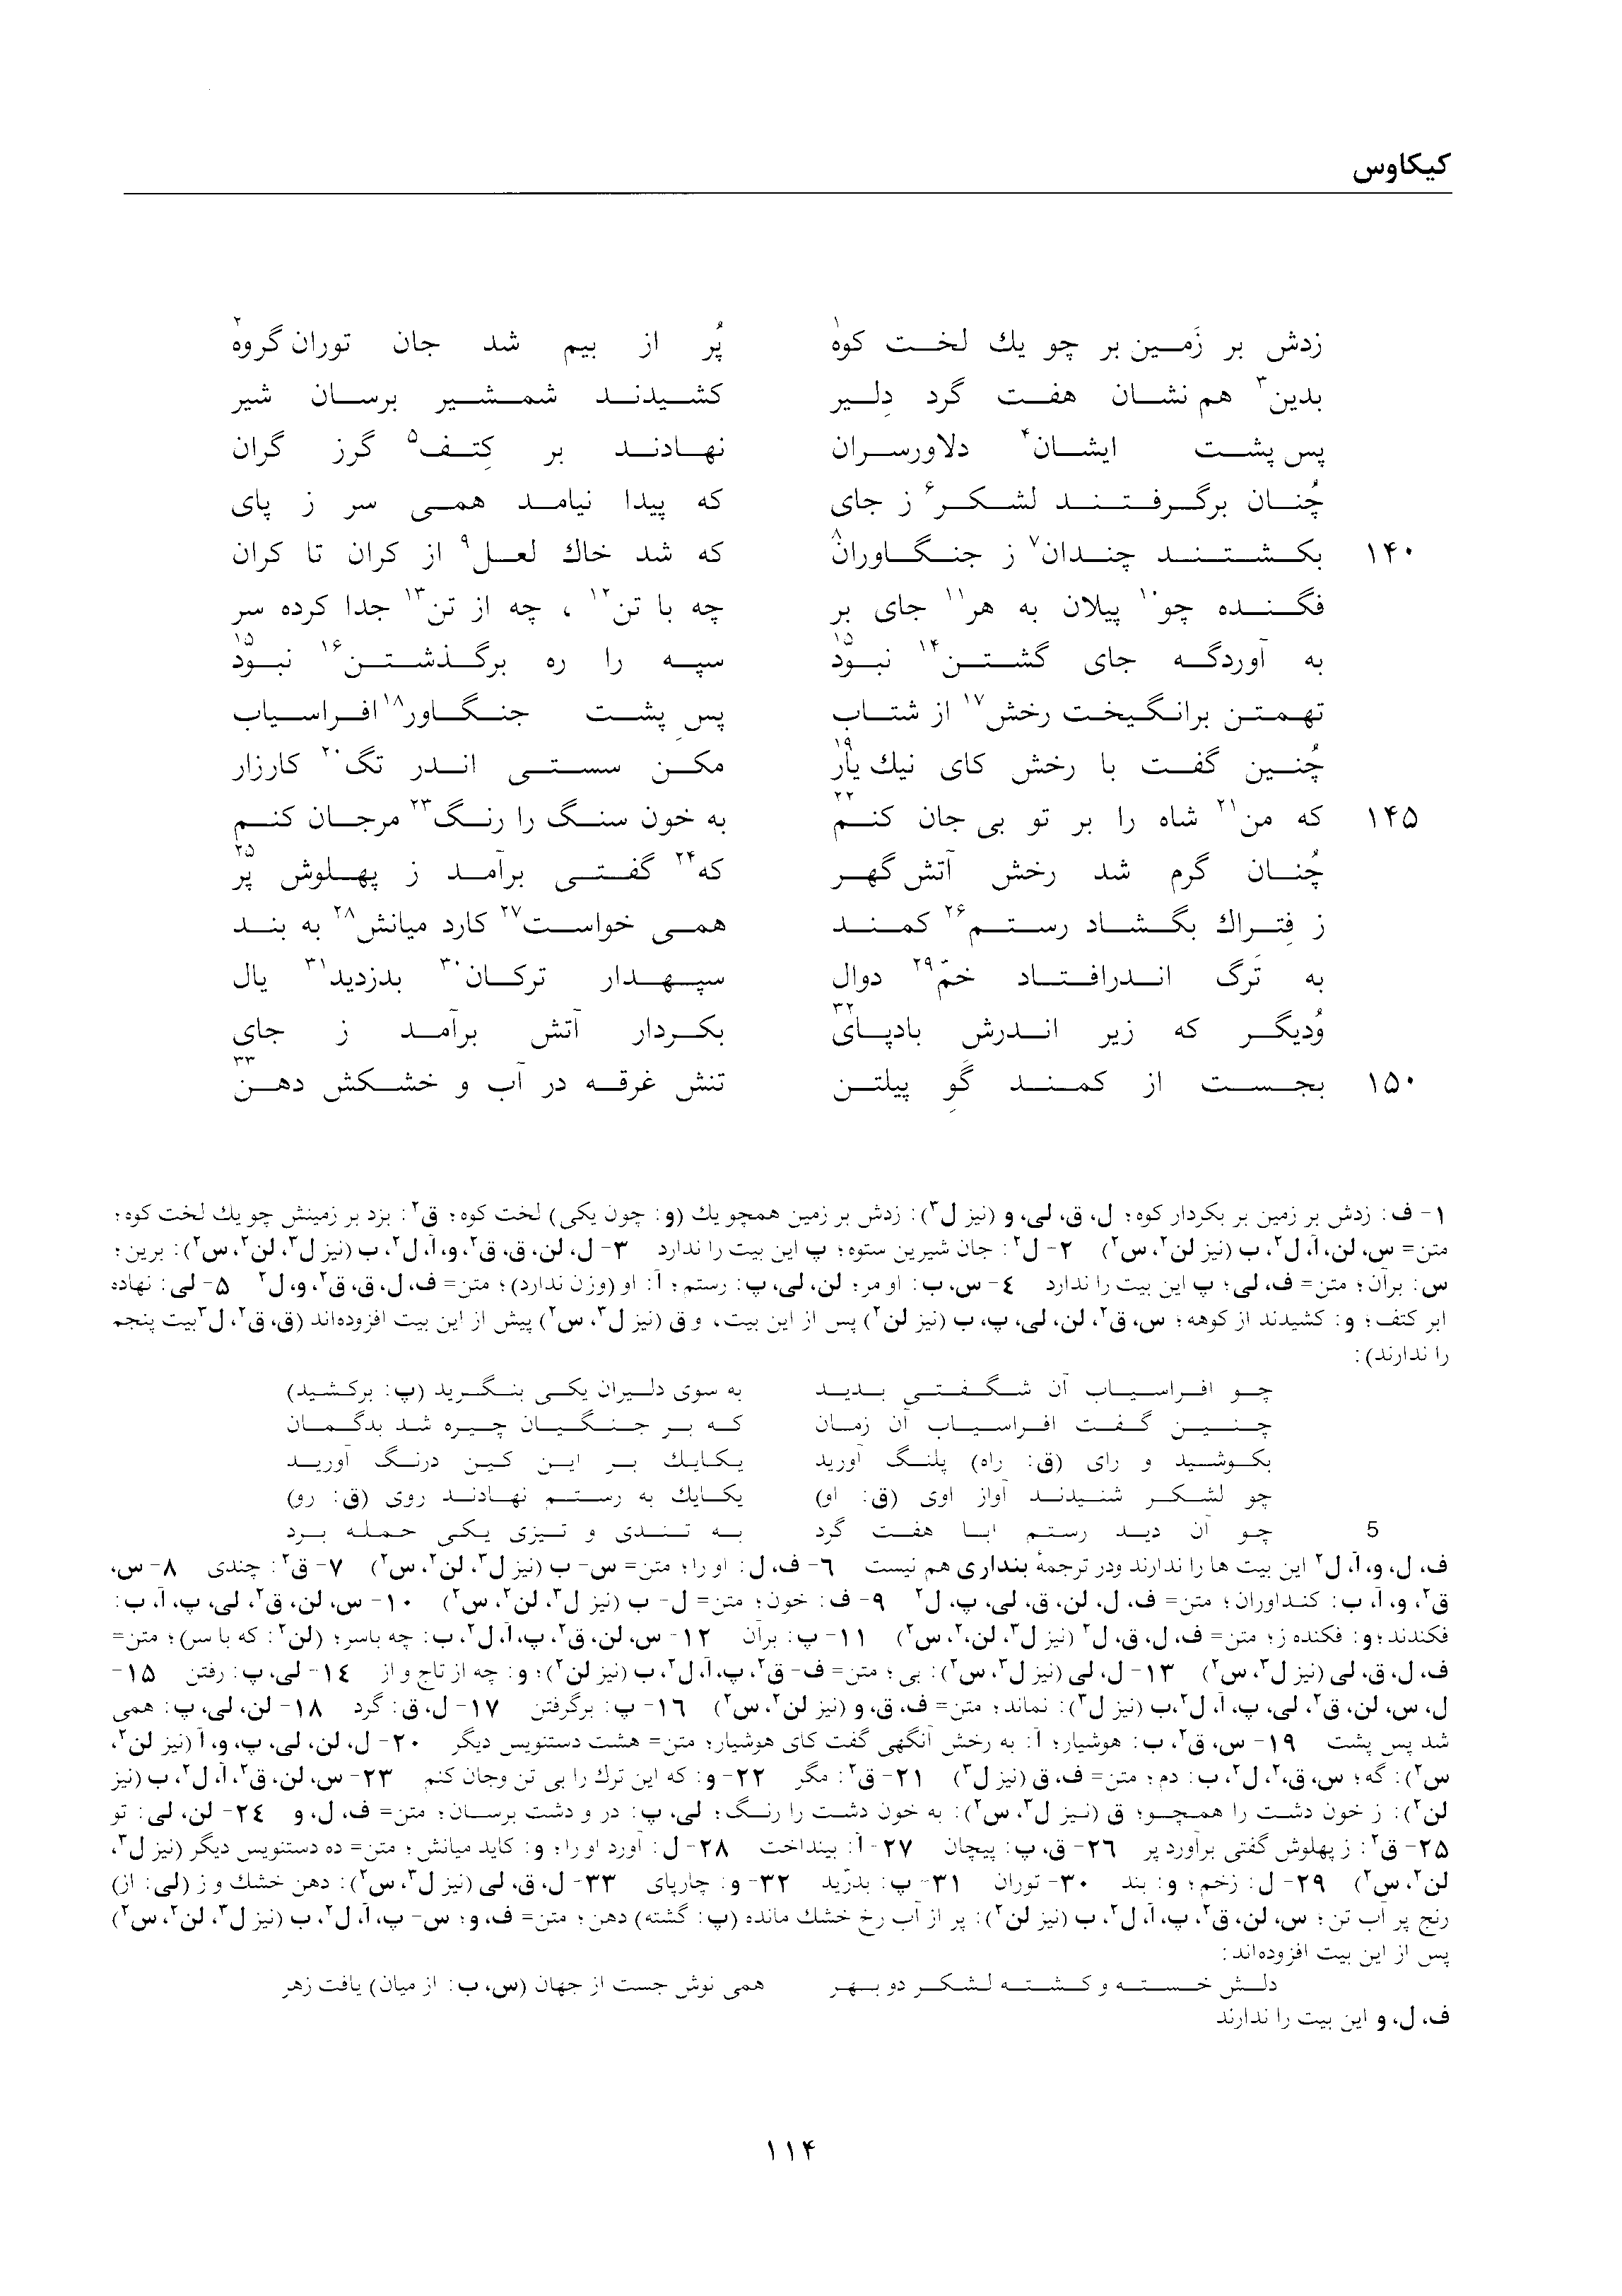 vol. 2, p. 114